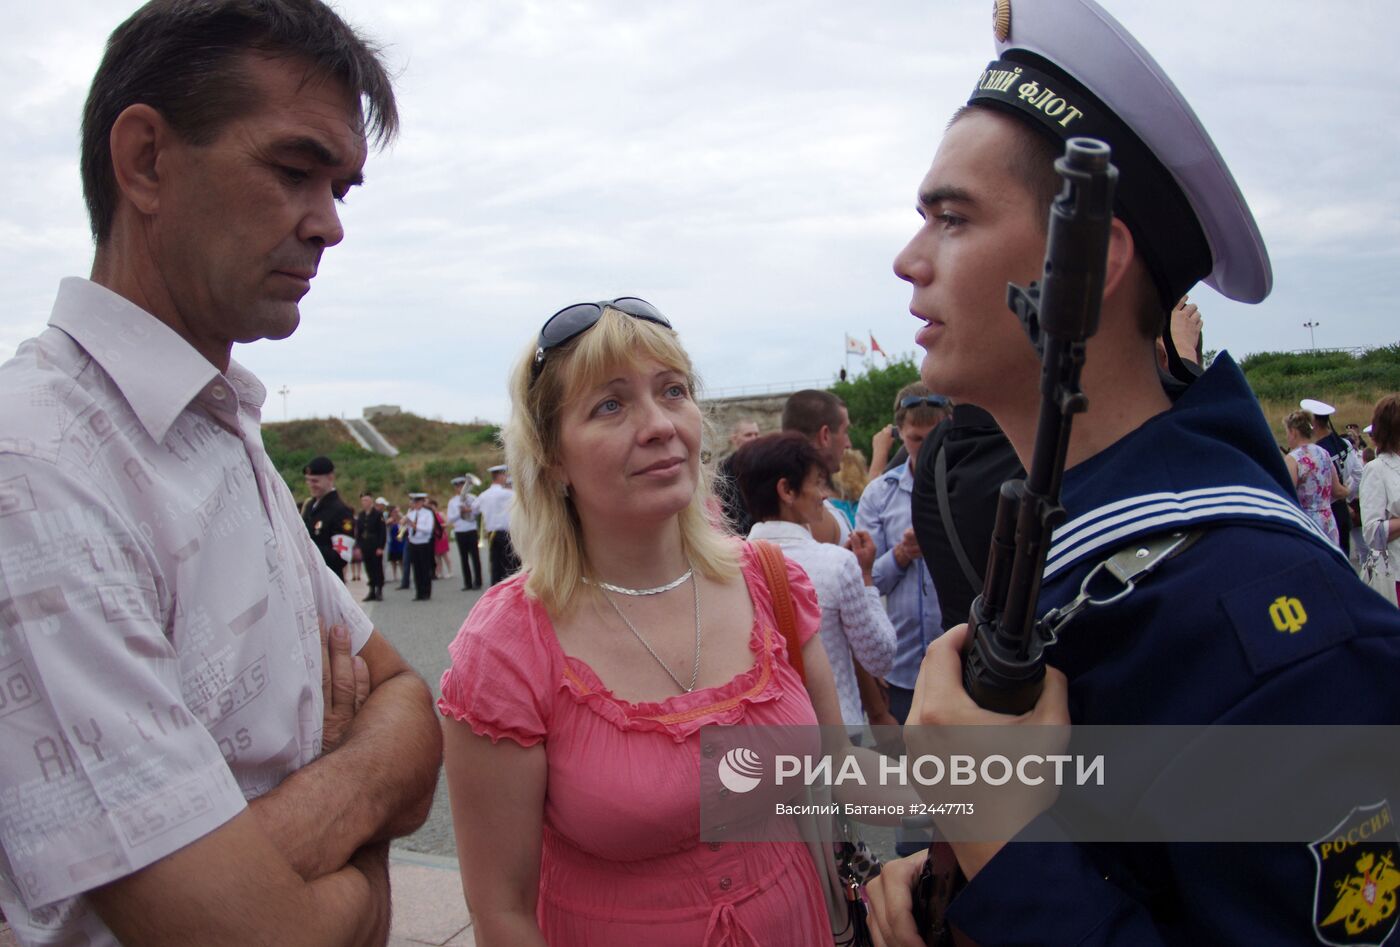 Моряки черноморского флота принимают присягу в Севастополе